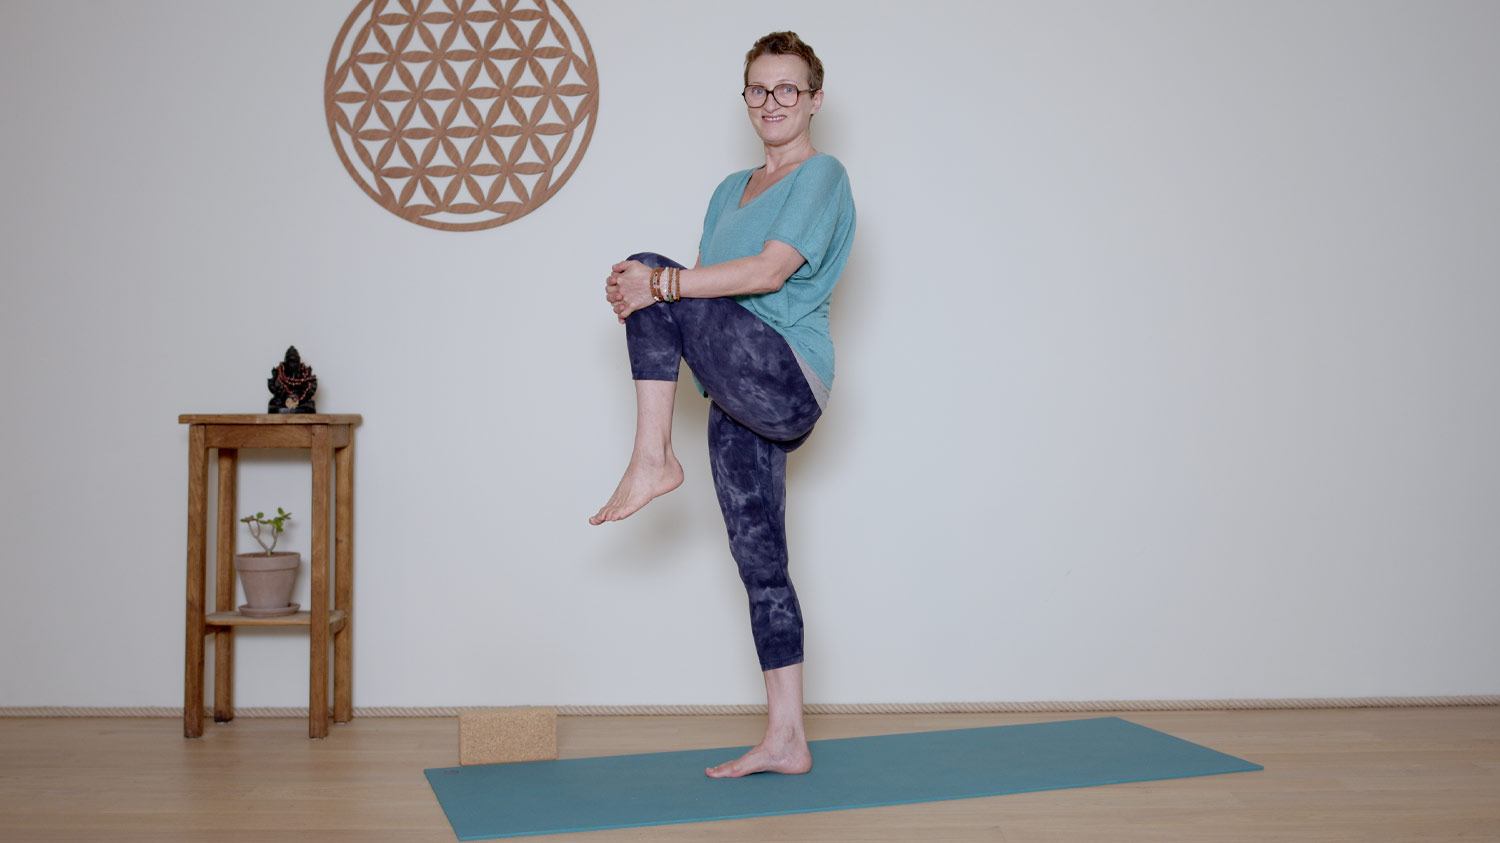 Replay du lundi 11 septembre | Cours de yoga en ligne avec Delphine Denis | Hatha Yoga dynamique, Méditation, Pranayama